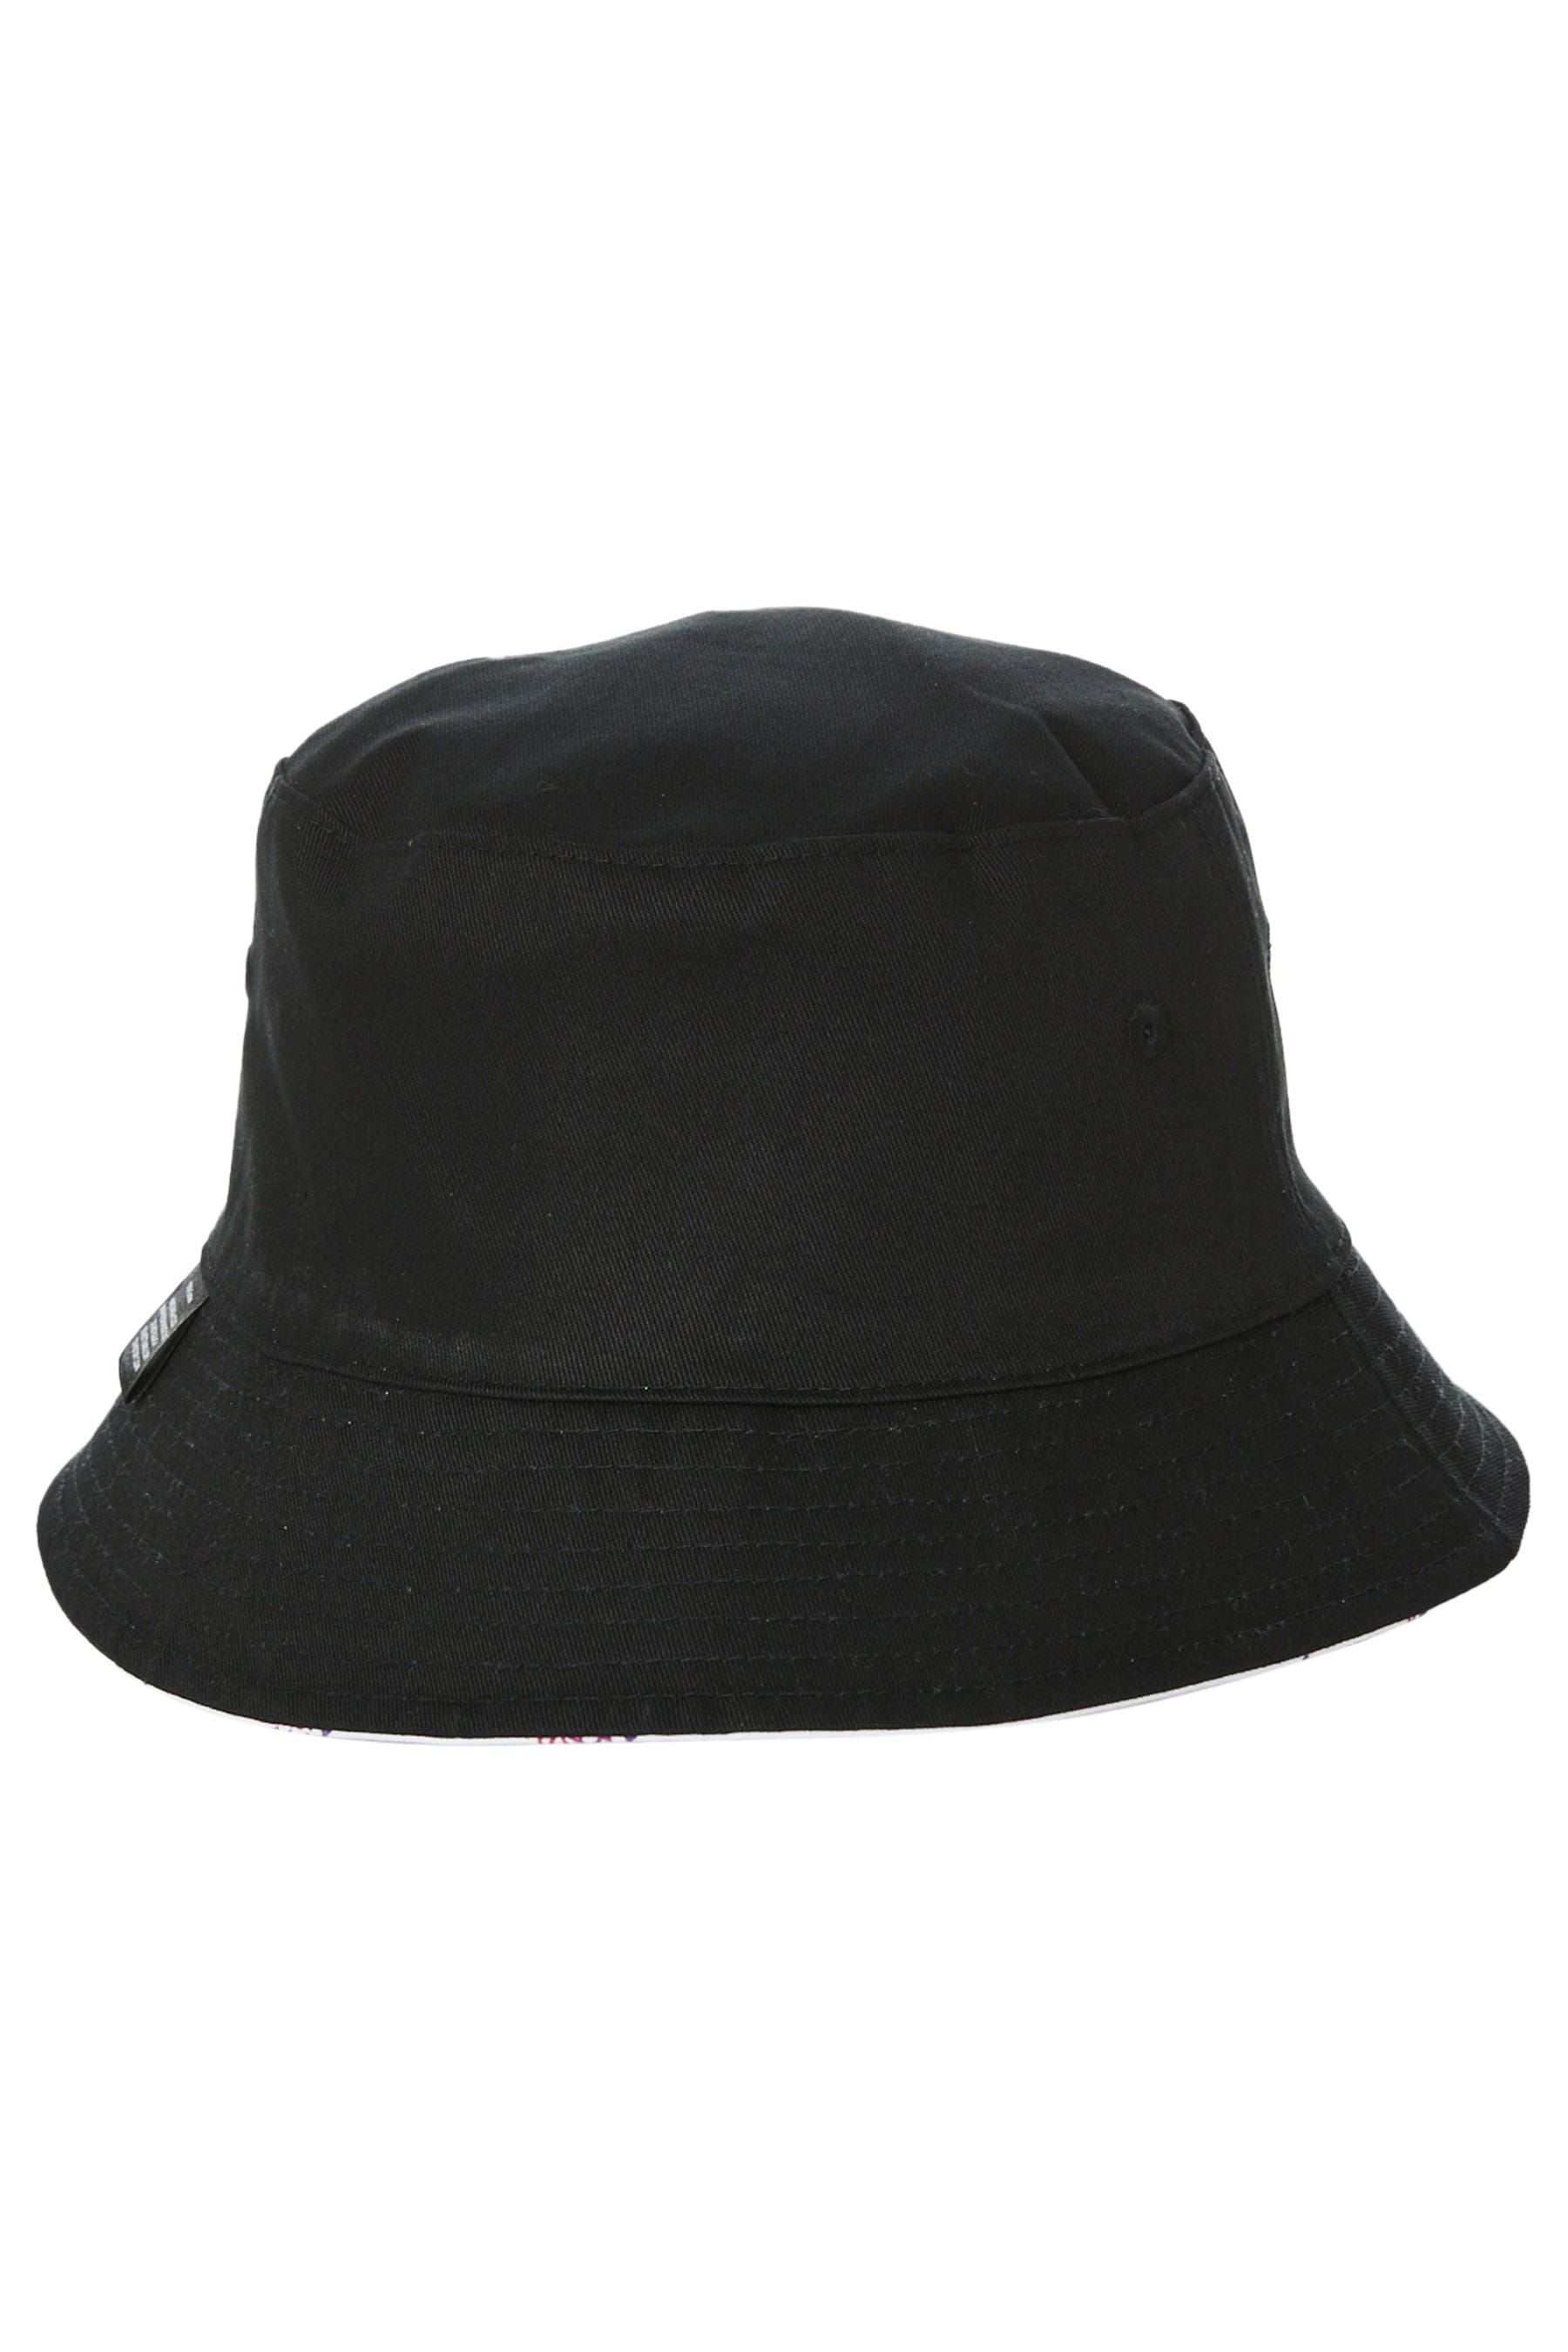 Full Send Revo Mens Bucket Hat - Black Black